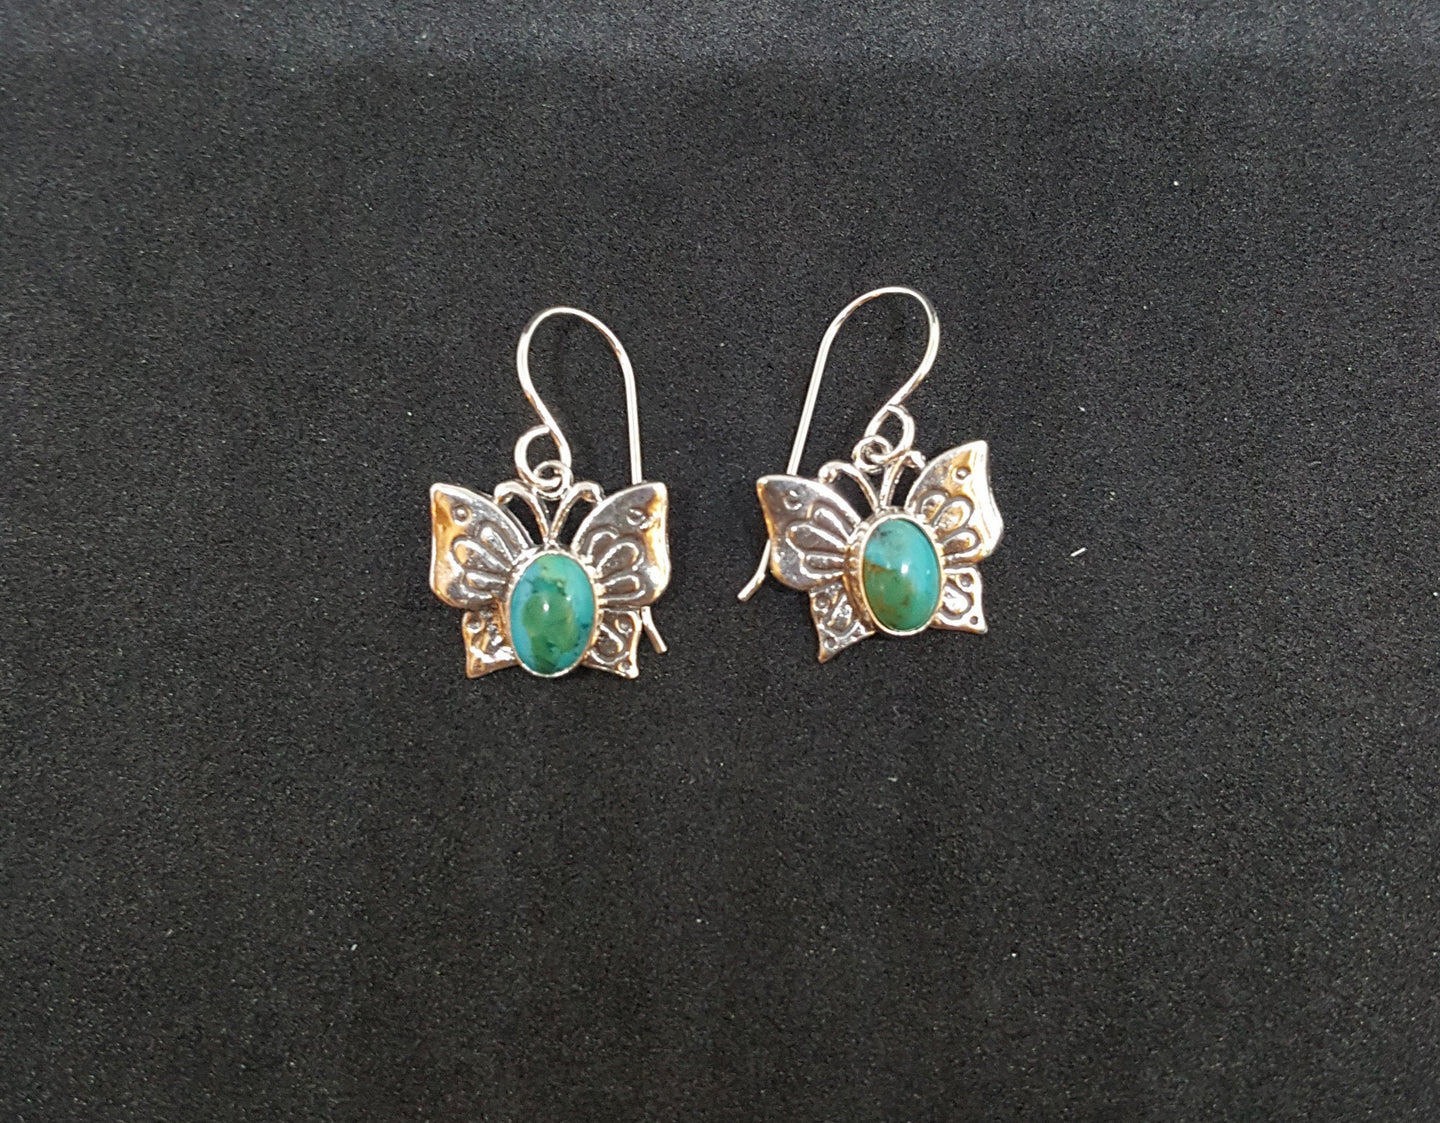 Southwest Butterfly Oval 7x5mm Kingman Turquoise sterling silver dangle earrings